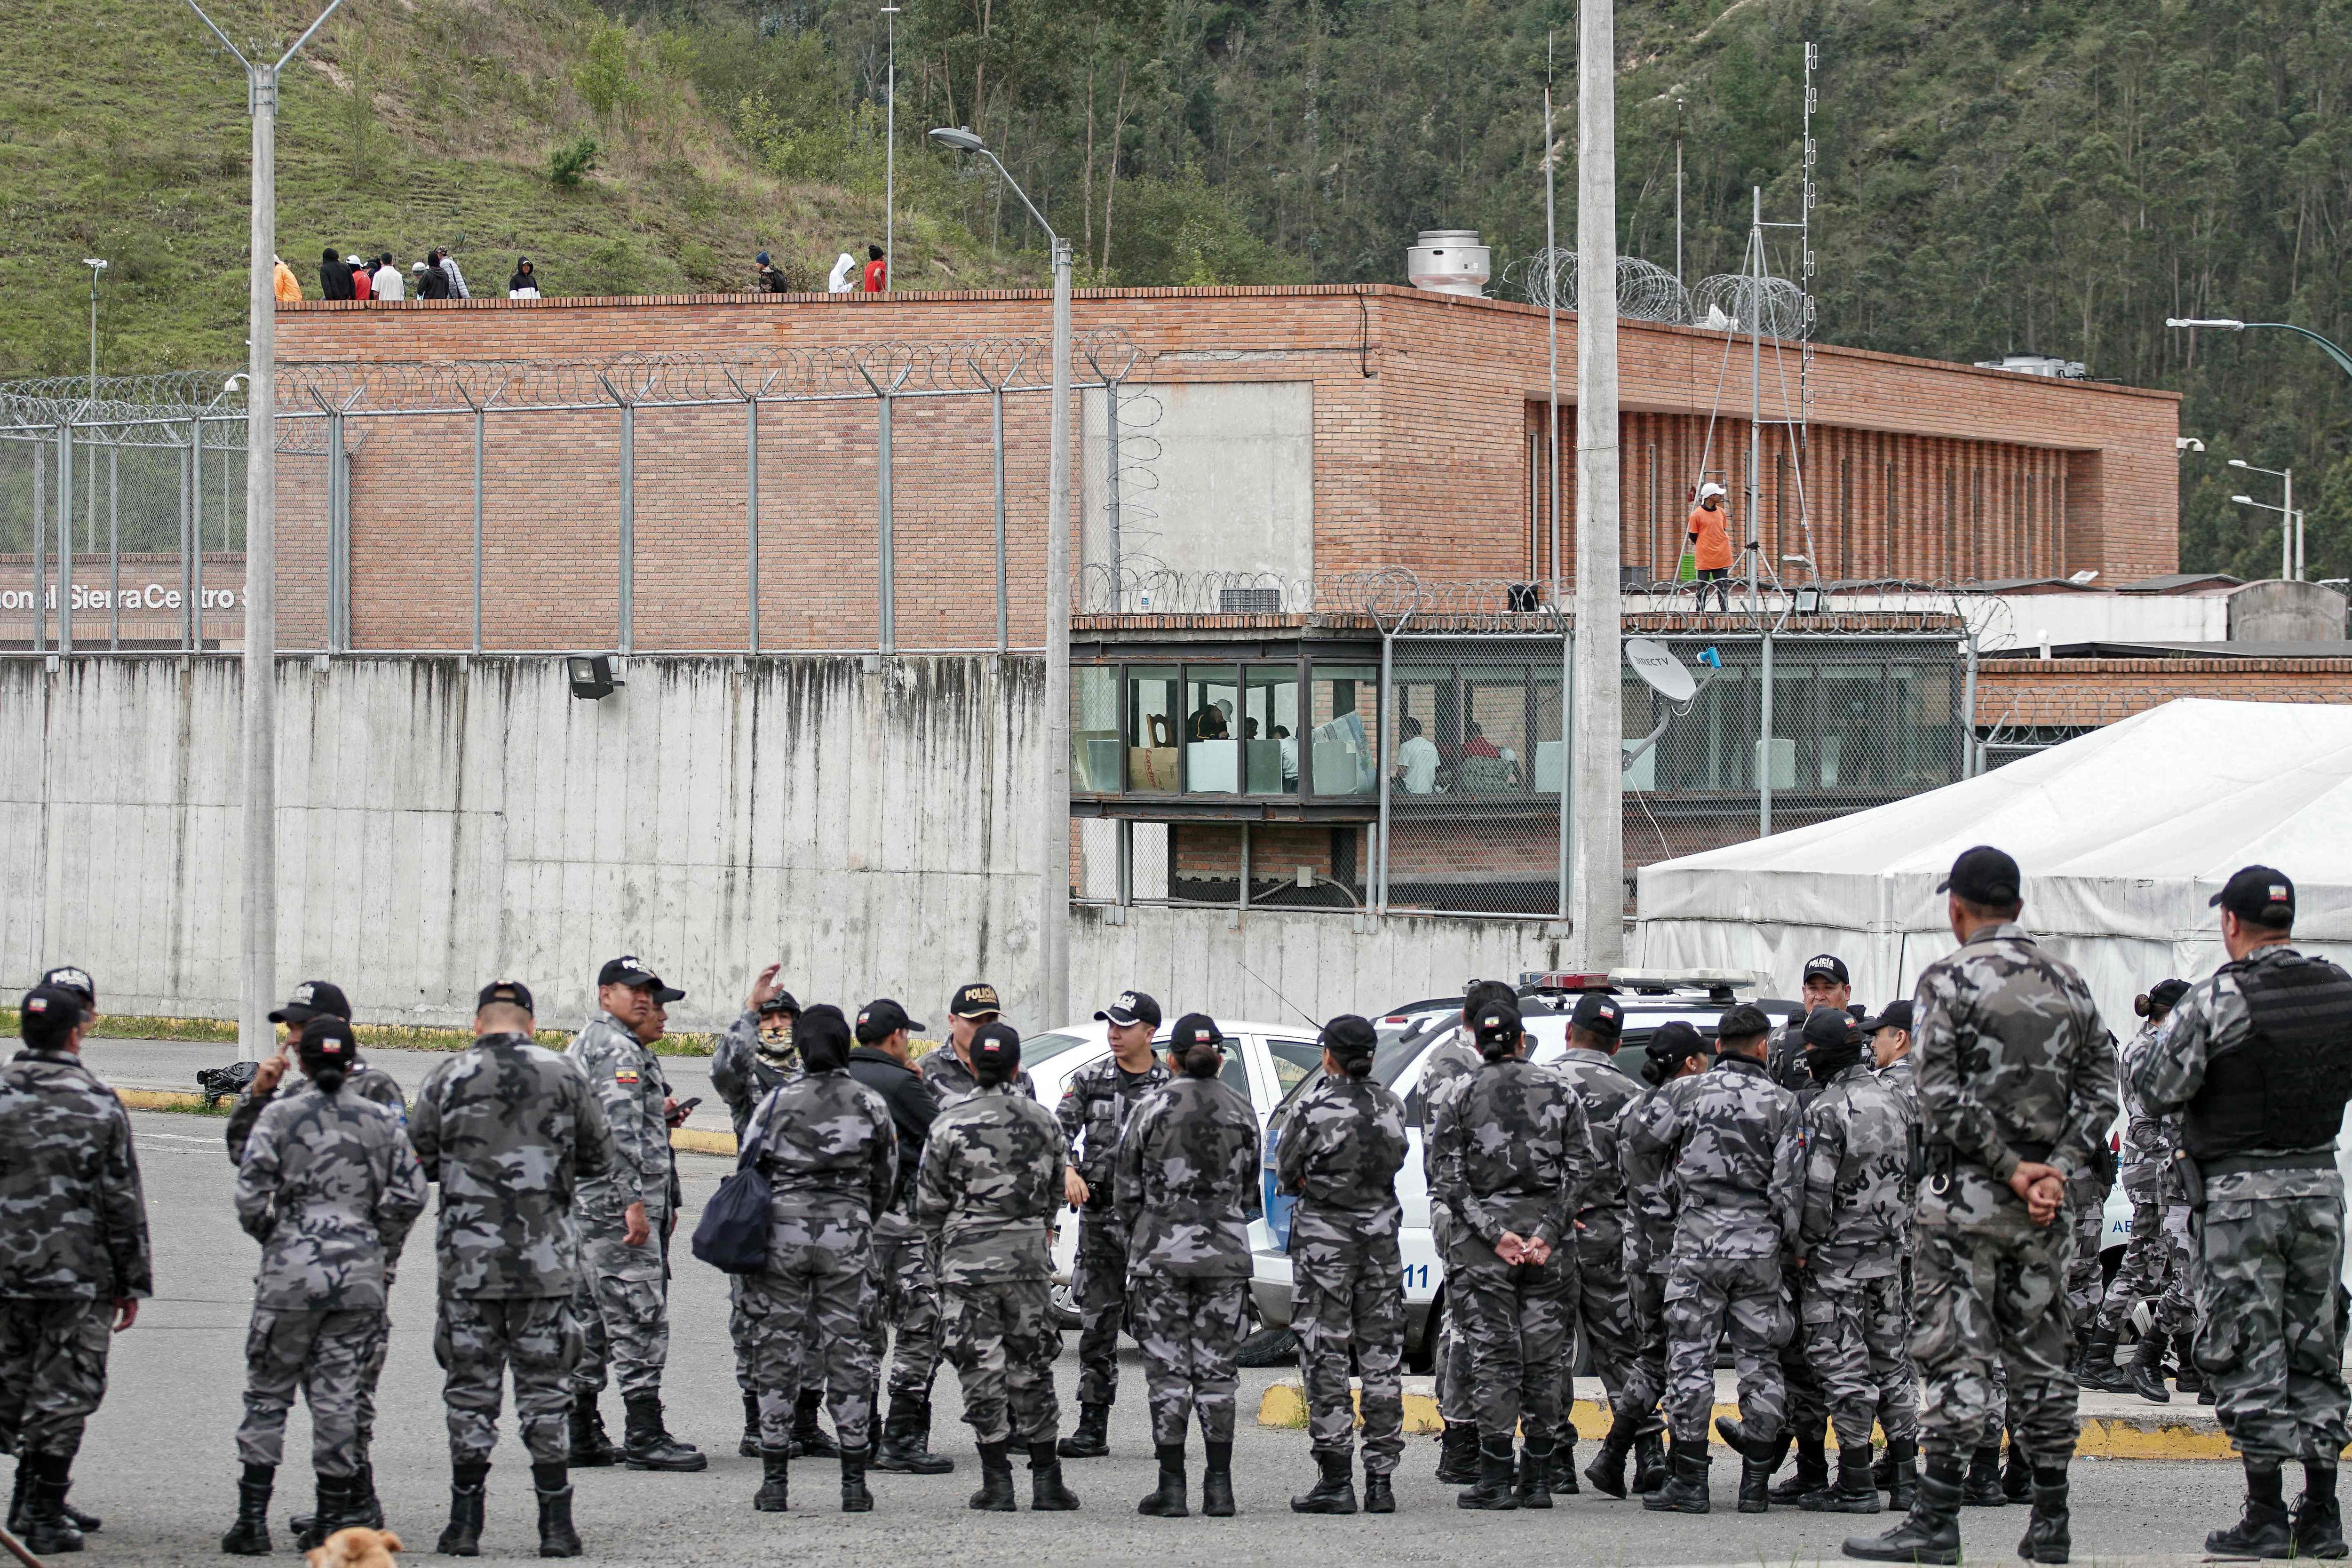 Las fuerzas policiales hacen guardia afuera de la prisión de Turi mientras los reclusos mantienen como rehenes a los guardias de la prisión, en Cuenca. Se cree que el líder de la principal banda criminal de Ecuador, Adolfo Macías, alias 